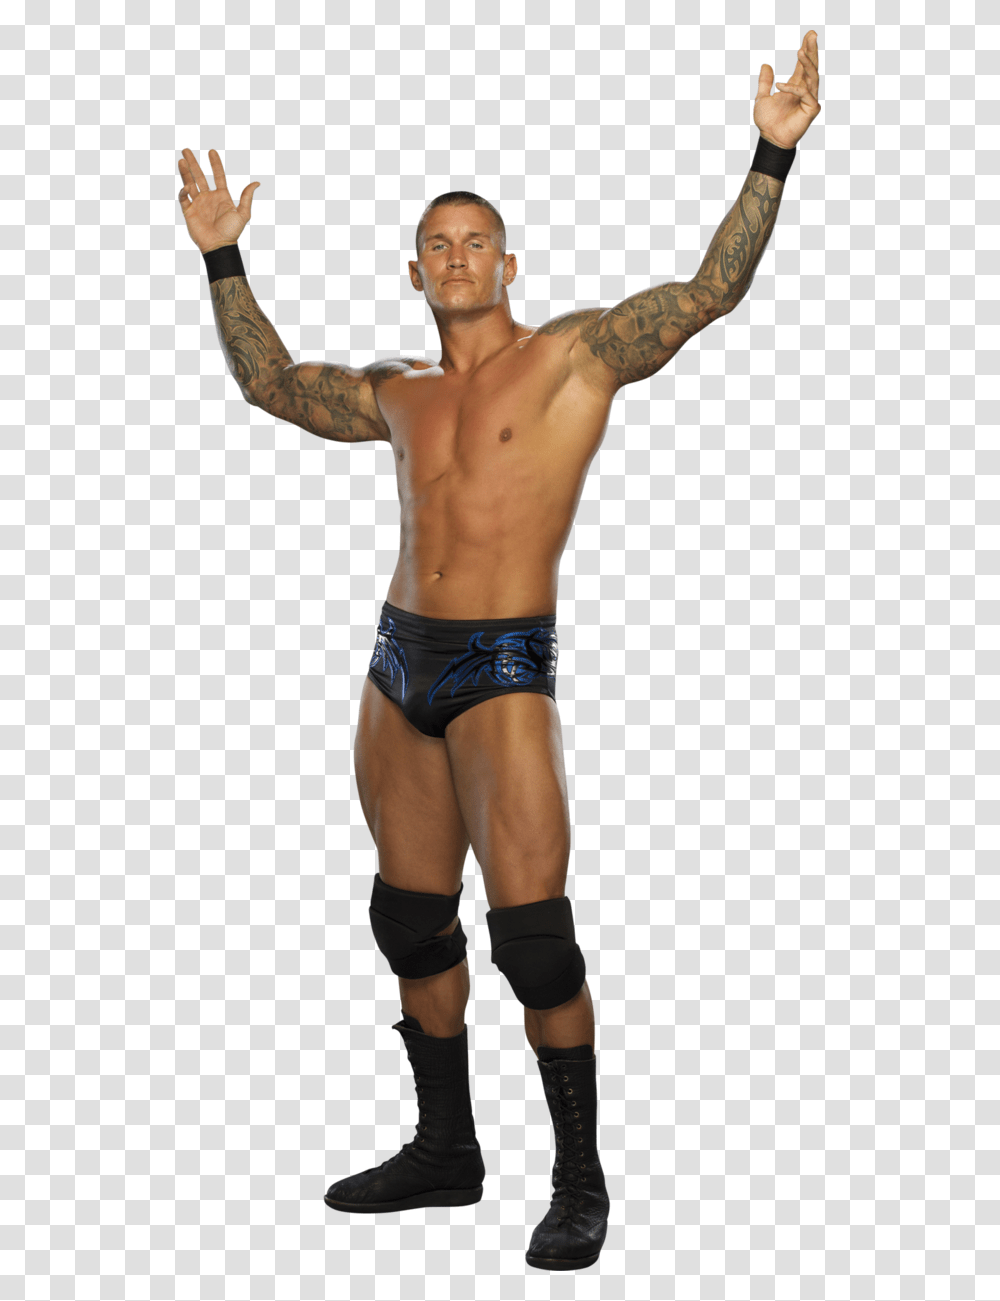 Randy Orton Image Randy Orton En, Person, Human, Skin, Back Transparent Png